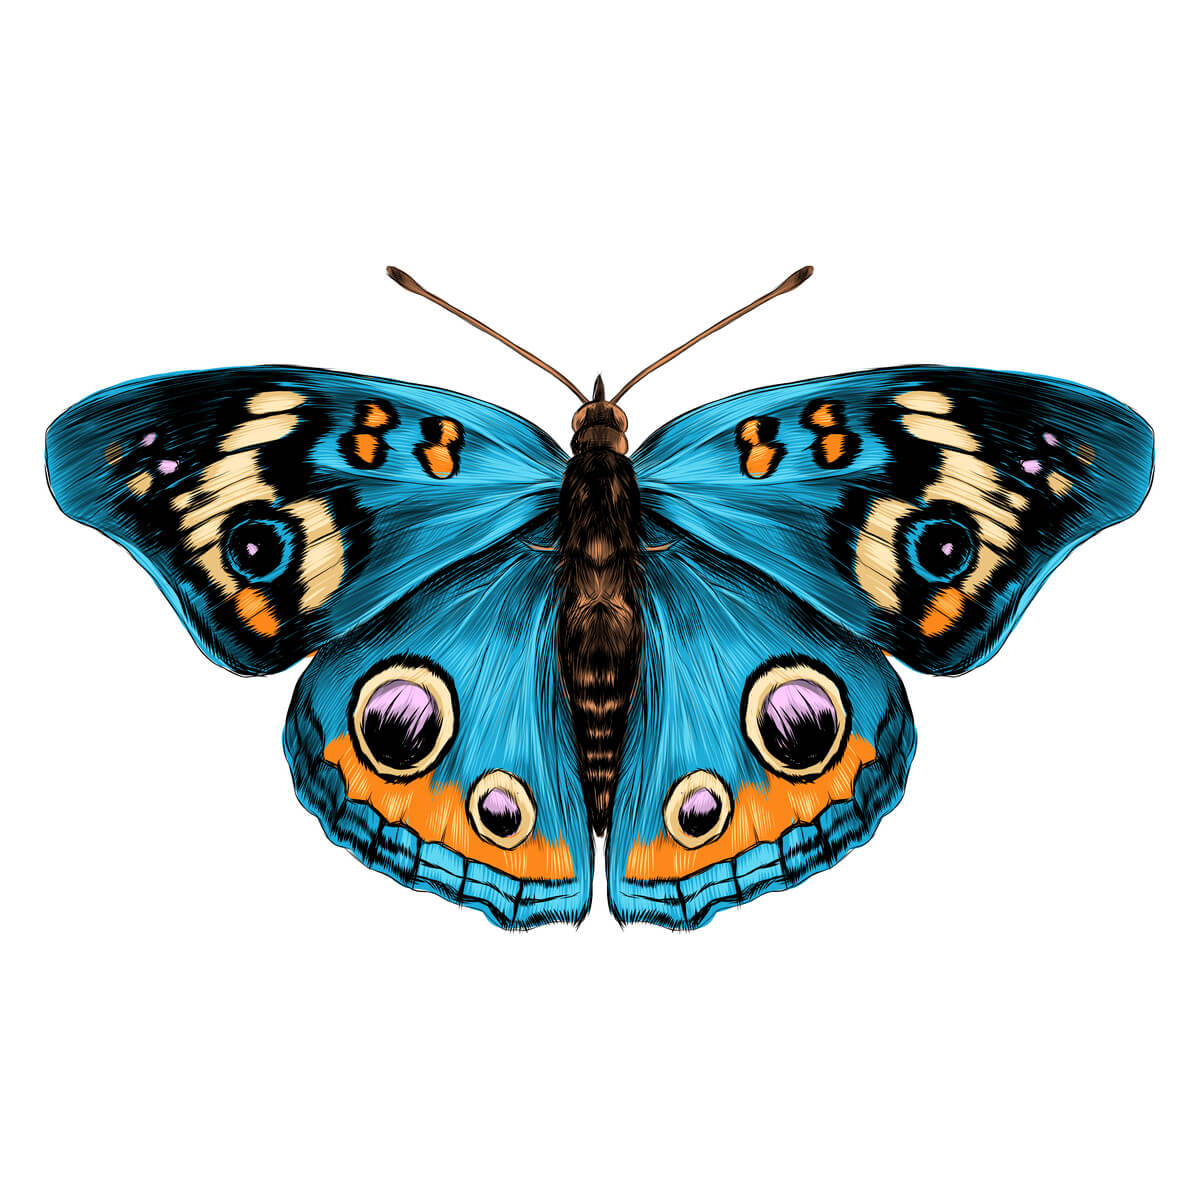 Alas de mariposa: la belleza en escamas - Mis Animales